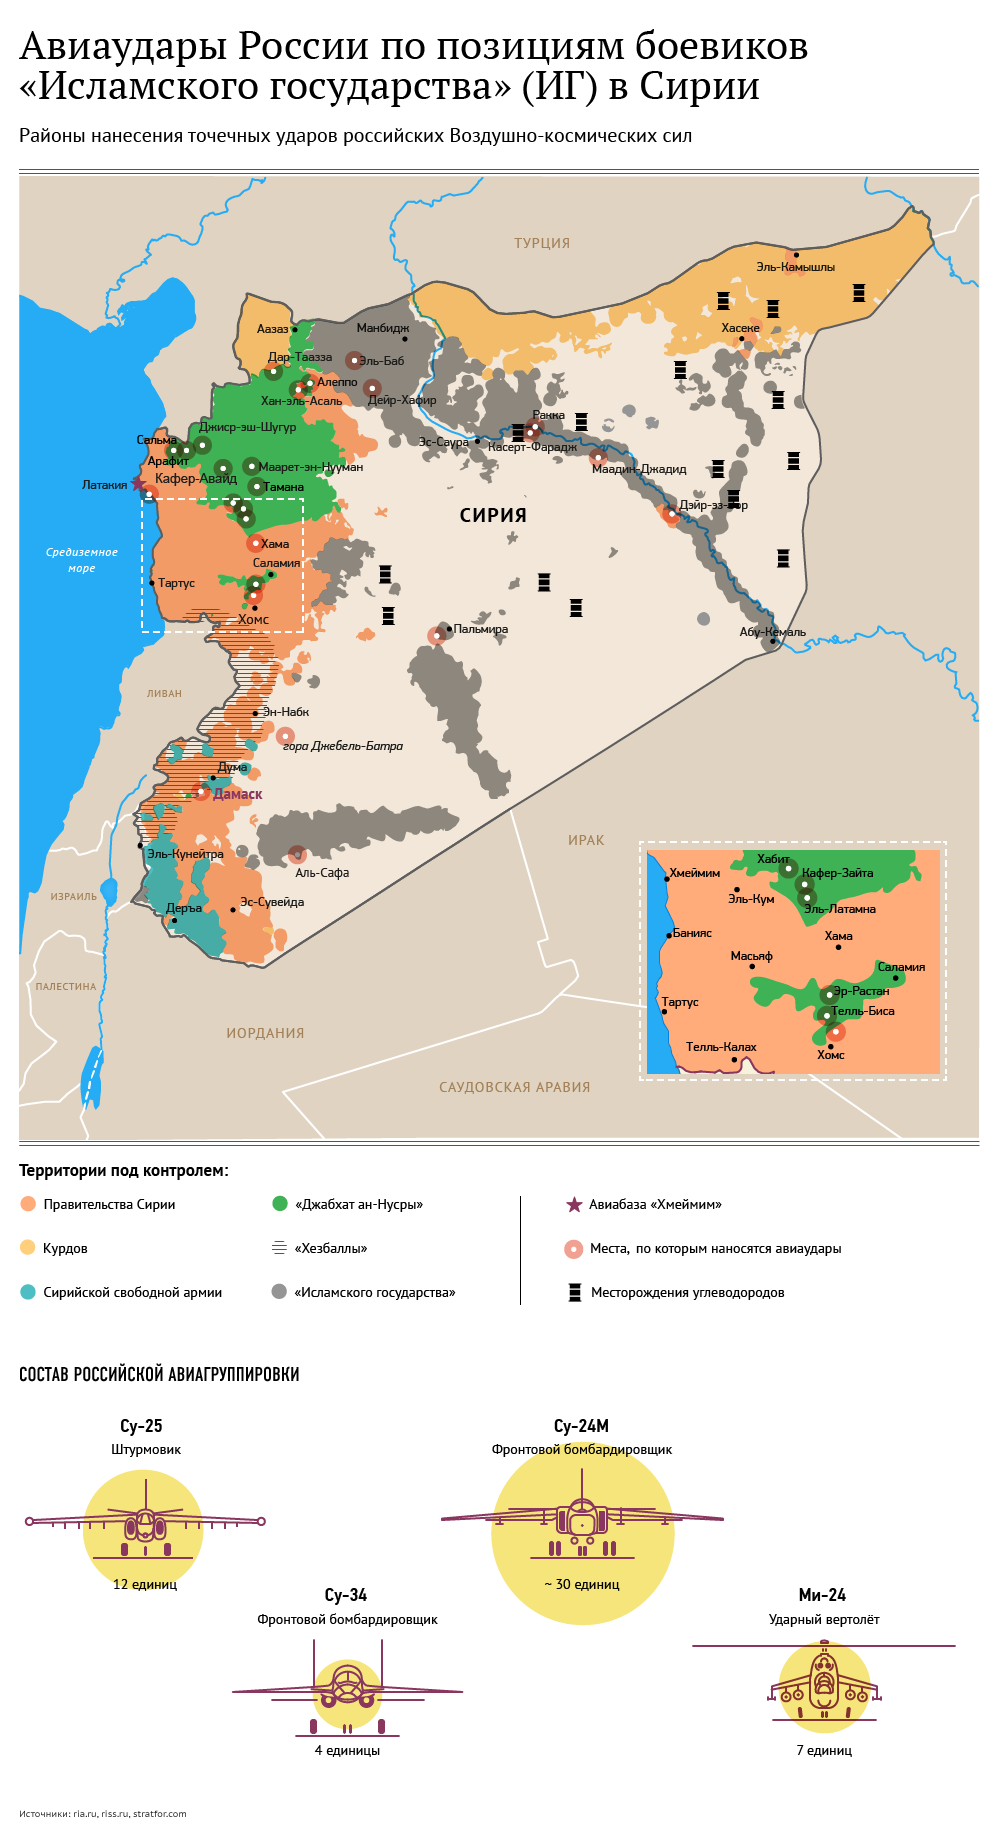 Авиаудары РФ по Исламскому государству в Сирии. Инфографика